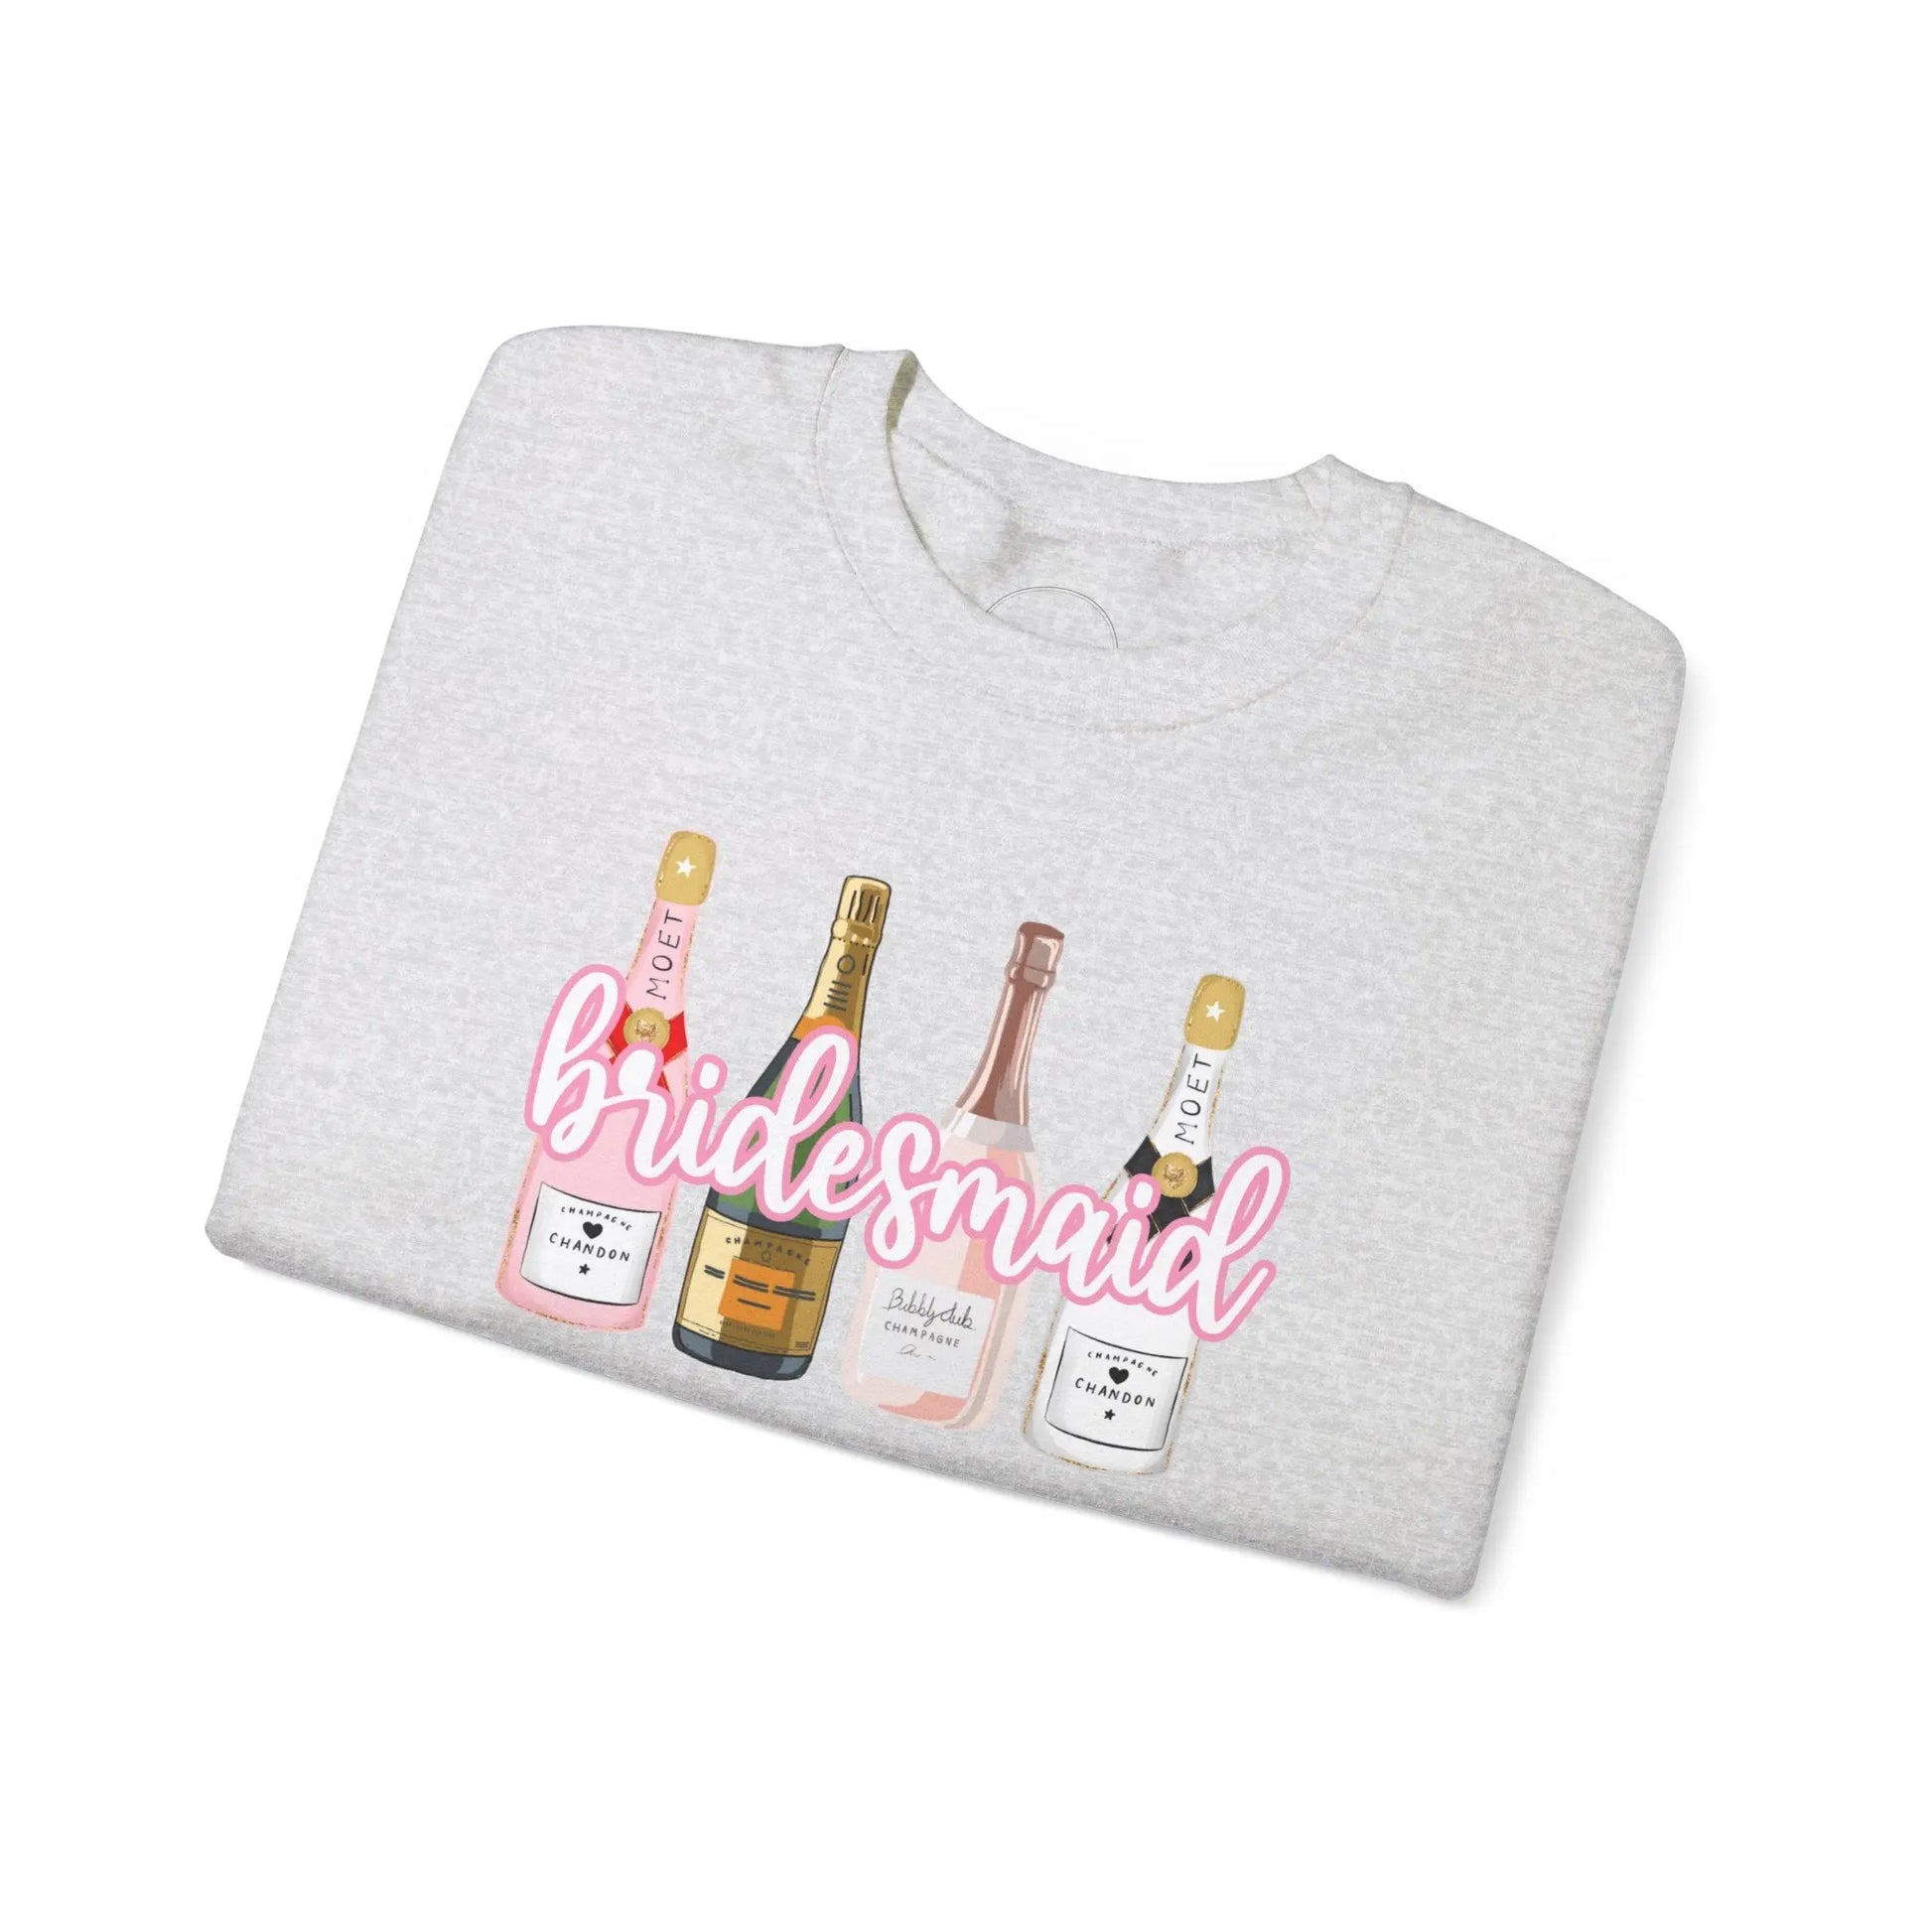 Champagne Dreams Bridal Collection - Bridesmaid Sweatshirt Printify